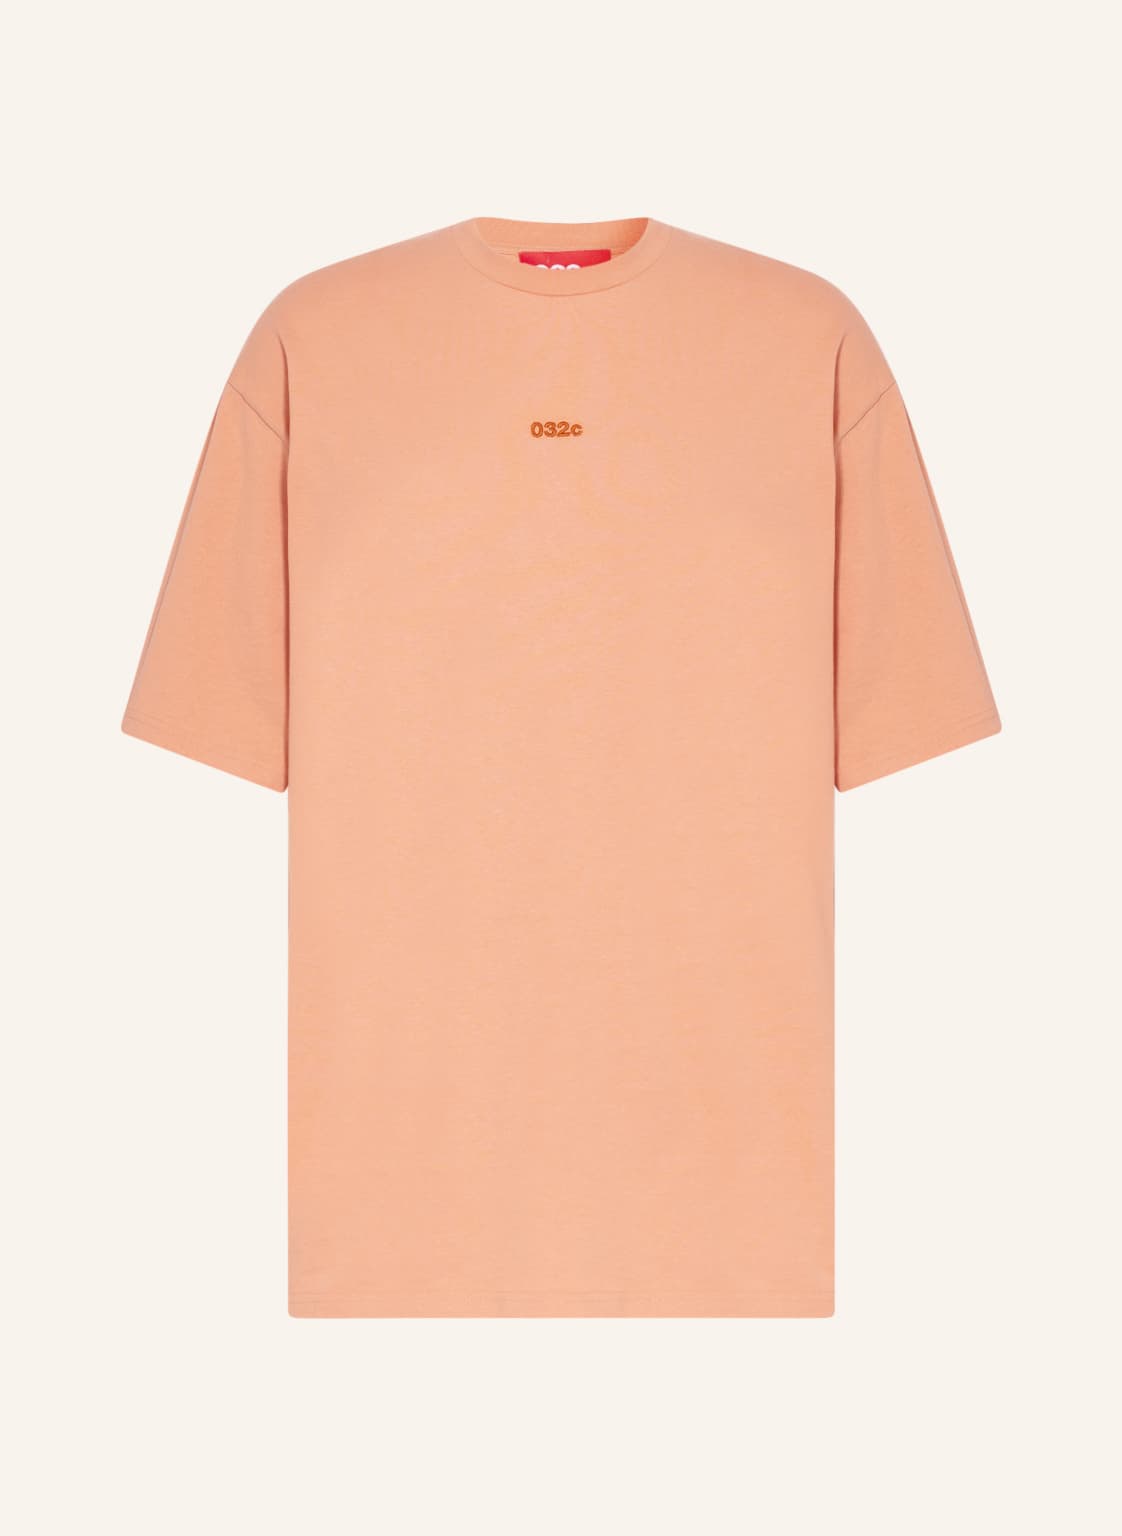 Image of 032c Oversized-Shirt orange